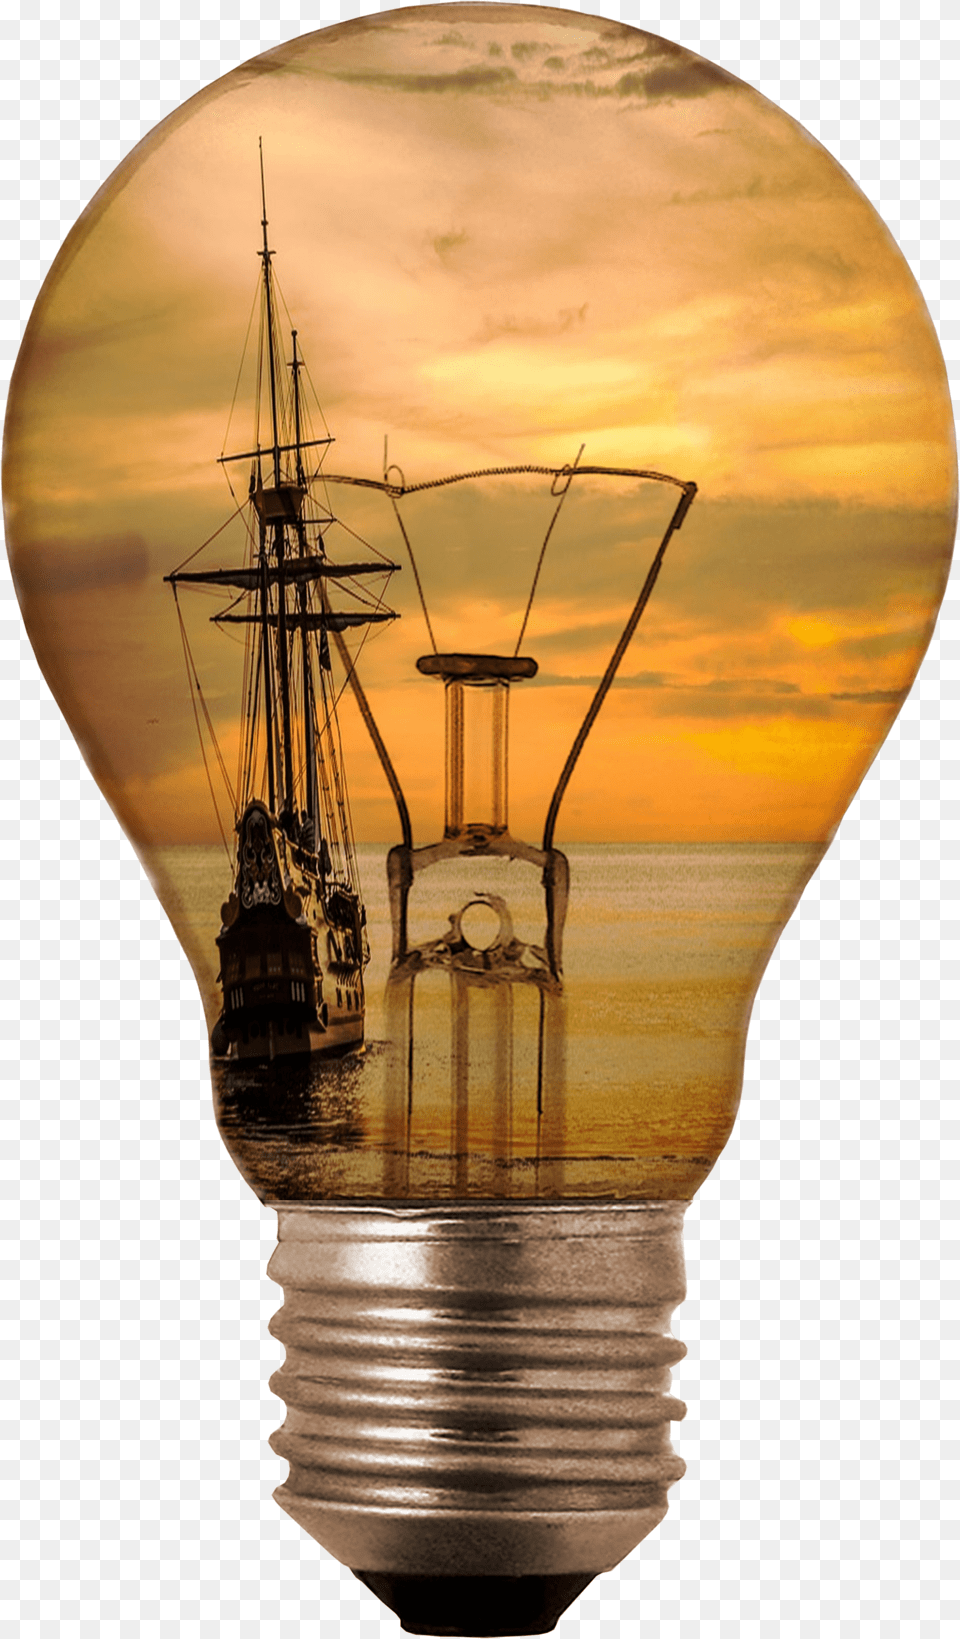 Transparent Background Light Bulb, Boat, Transportation, Vehicle, Lightbulb Png